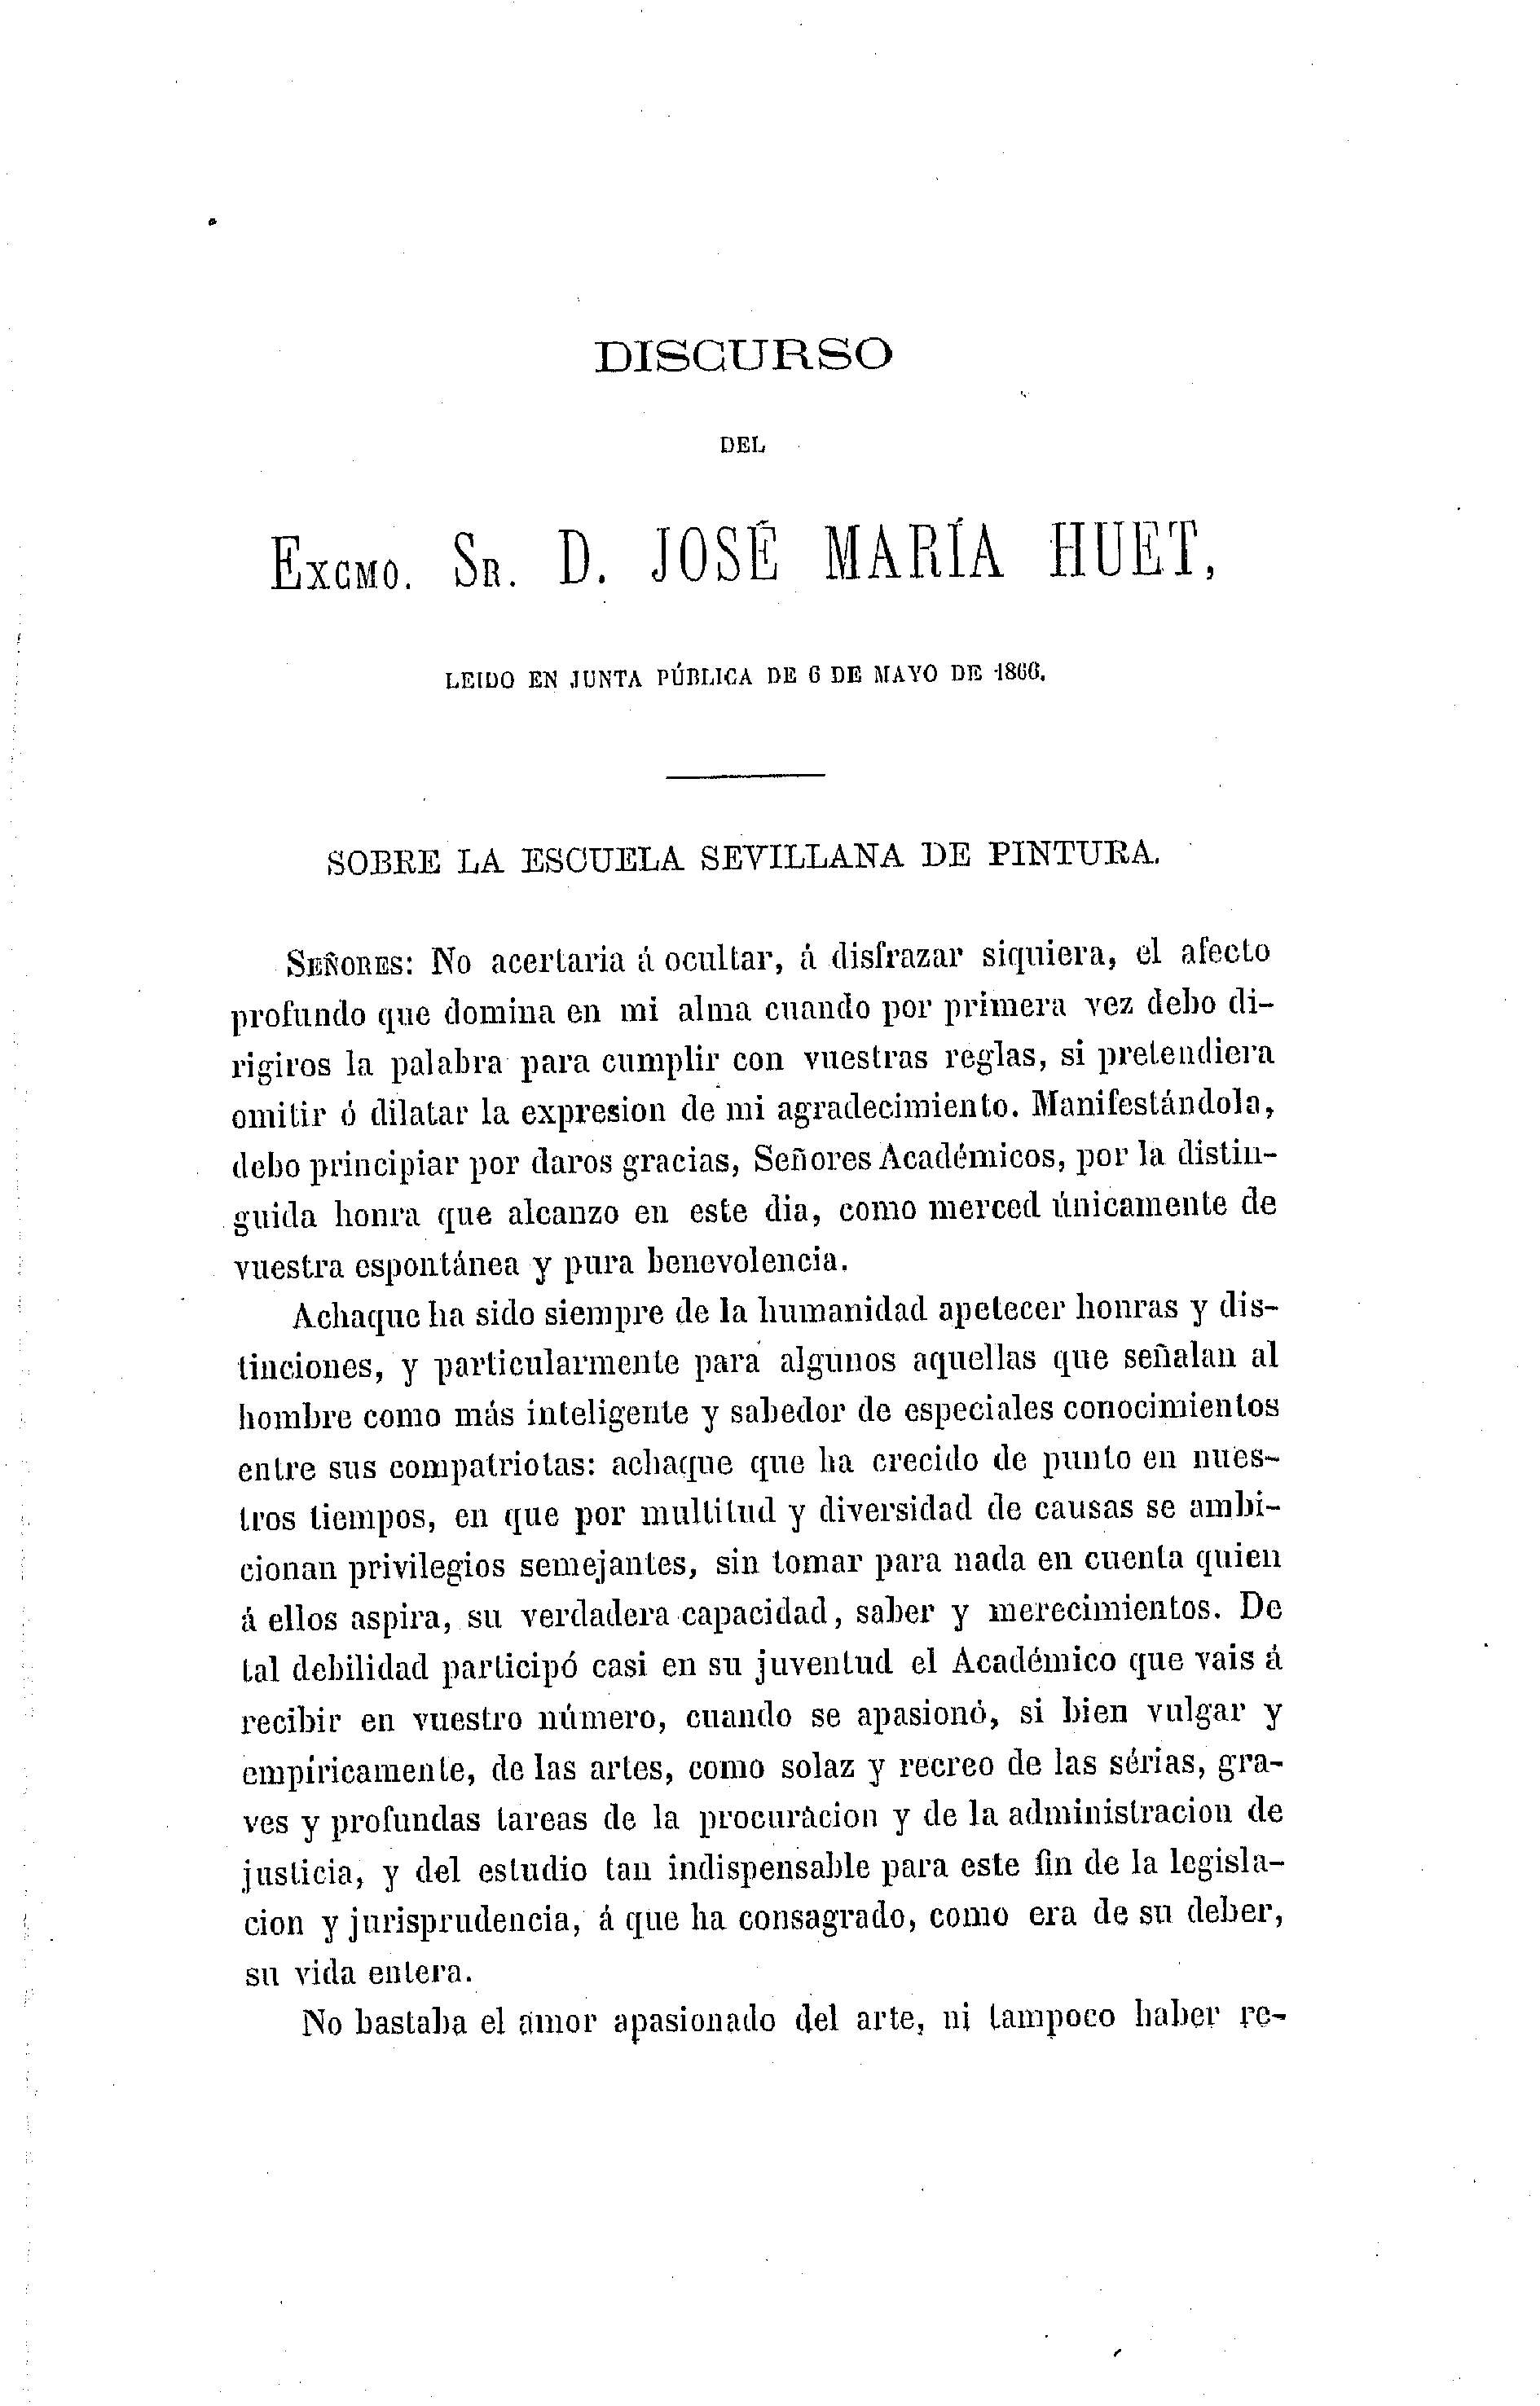 Discurso del Excmo. Sr. D. José María Huet, leído en Junta Pública de 6 de mayo de 1866